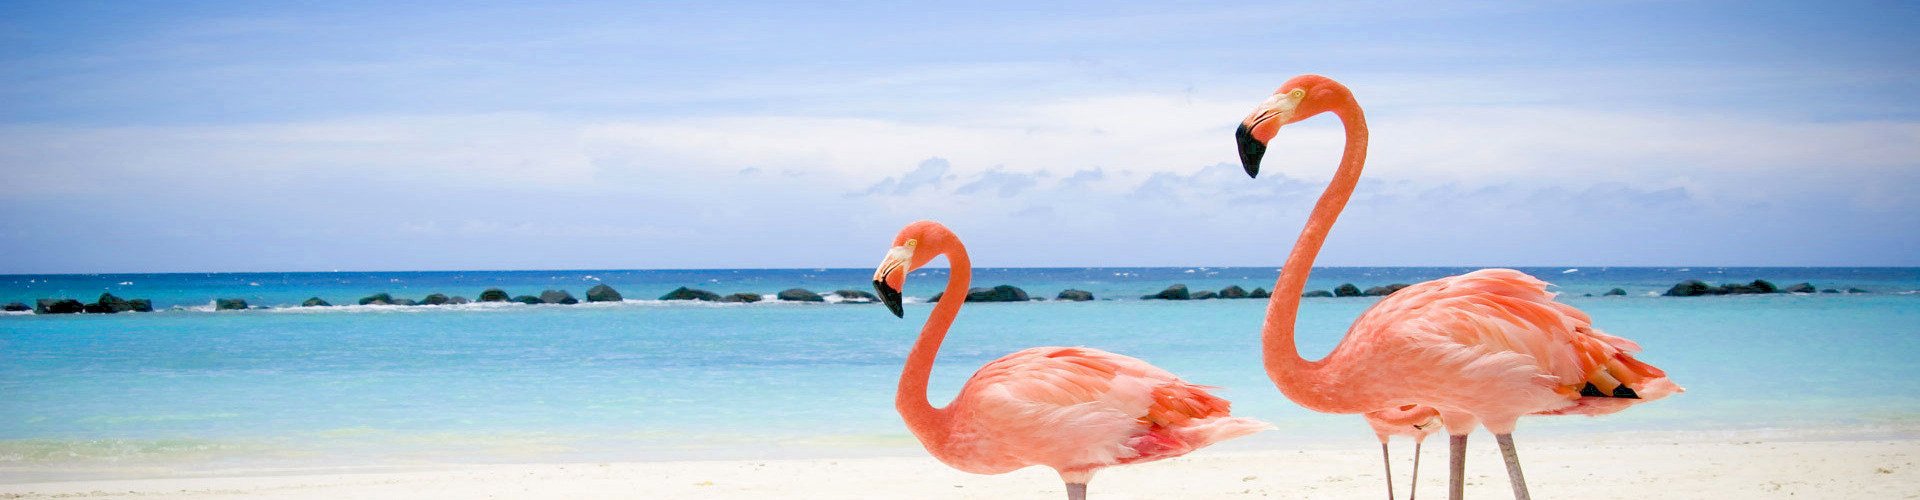 Фламинго на одной ноге на берегу моря